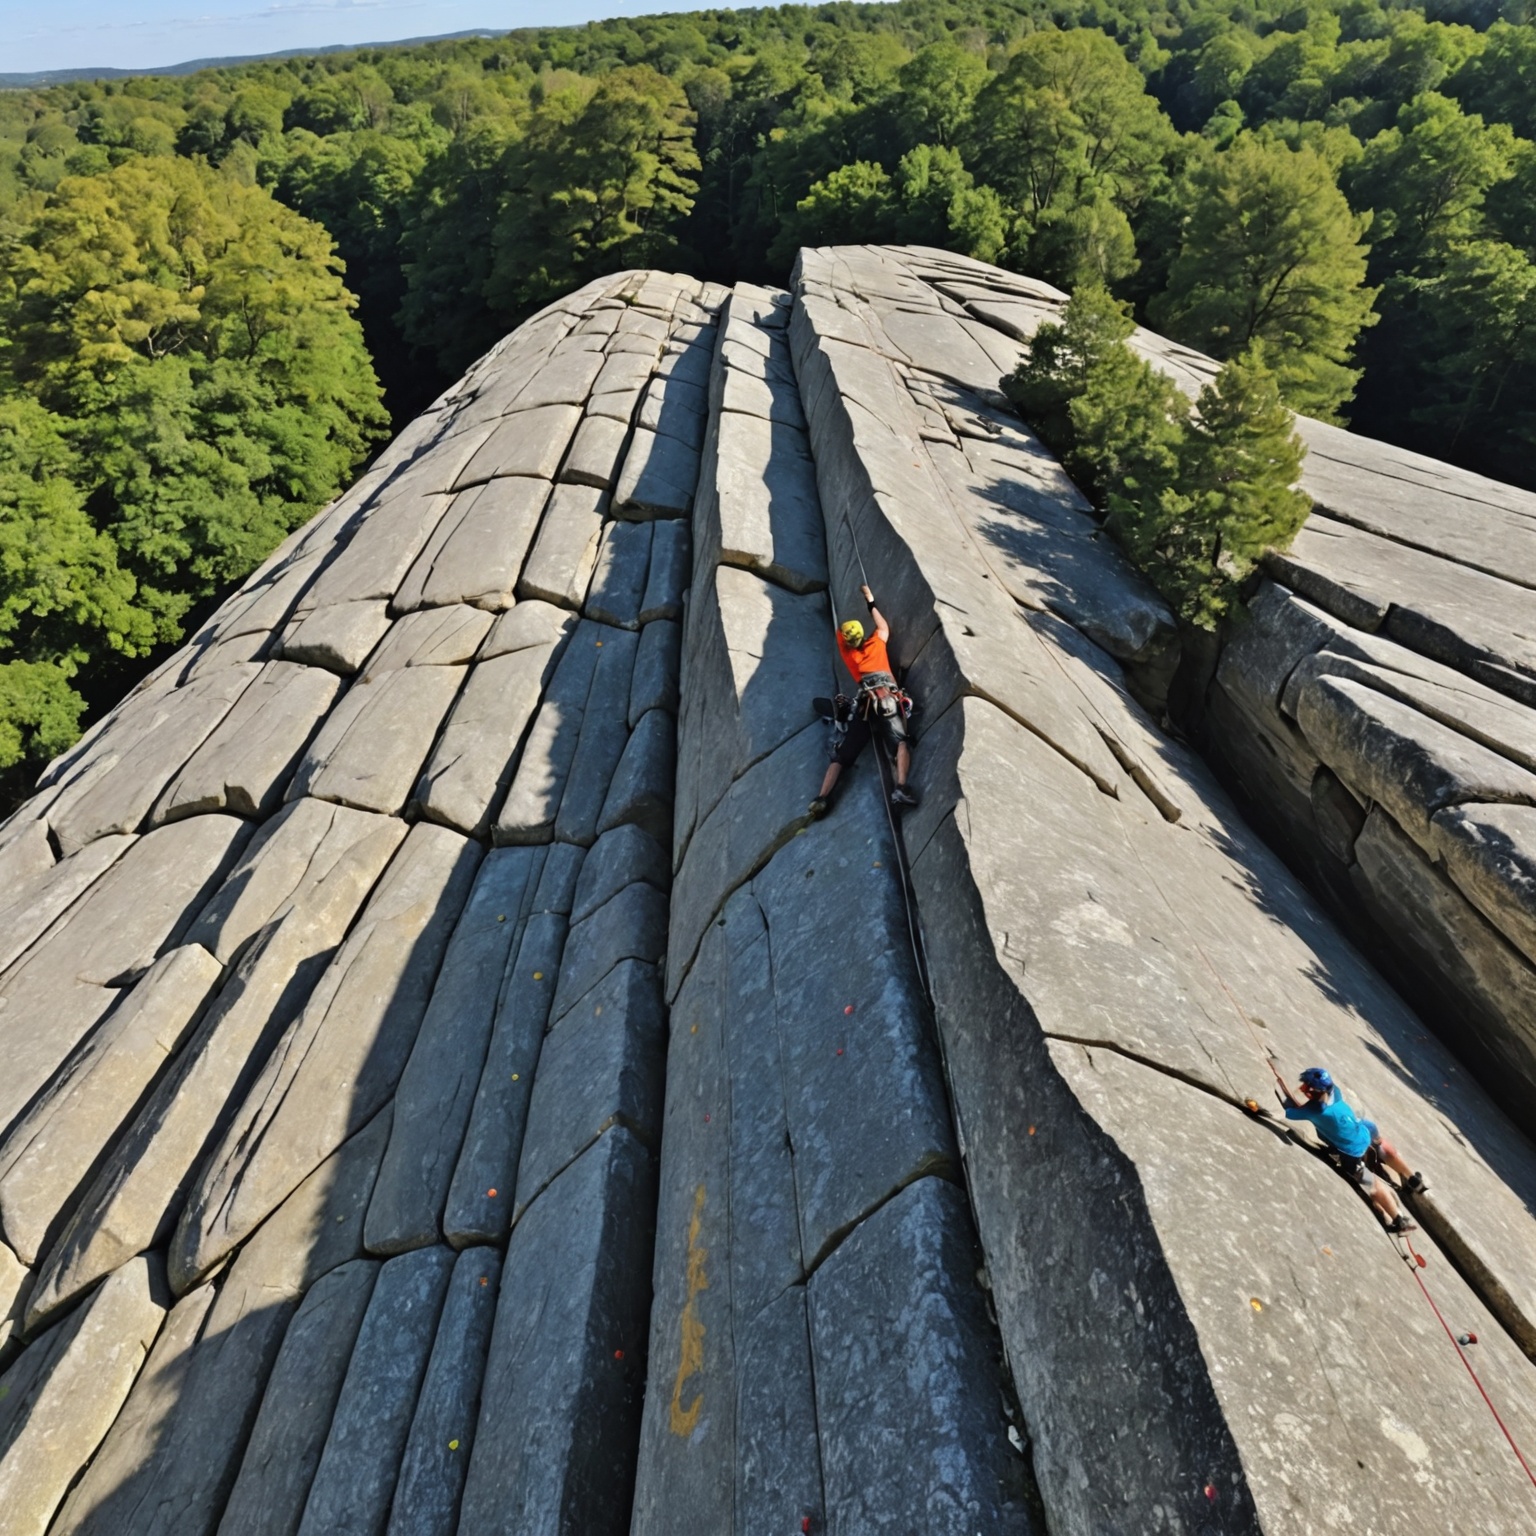 Escalade à Fontainebleau : Profitez au Max de ce Spot Exceptionnel Près d’un Camping Authentique !